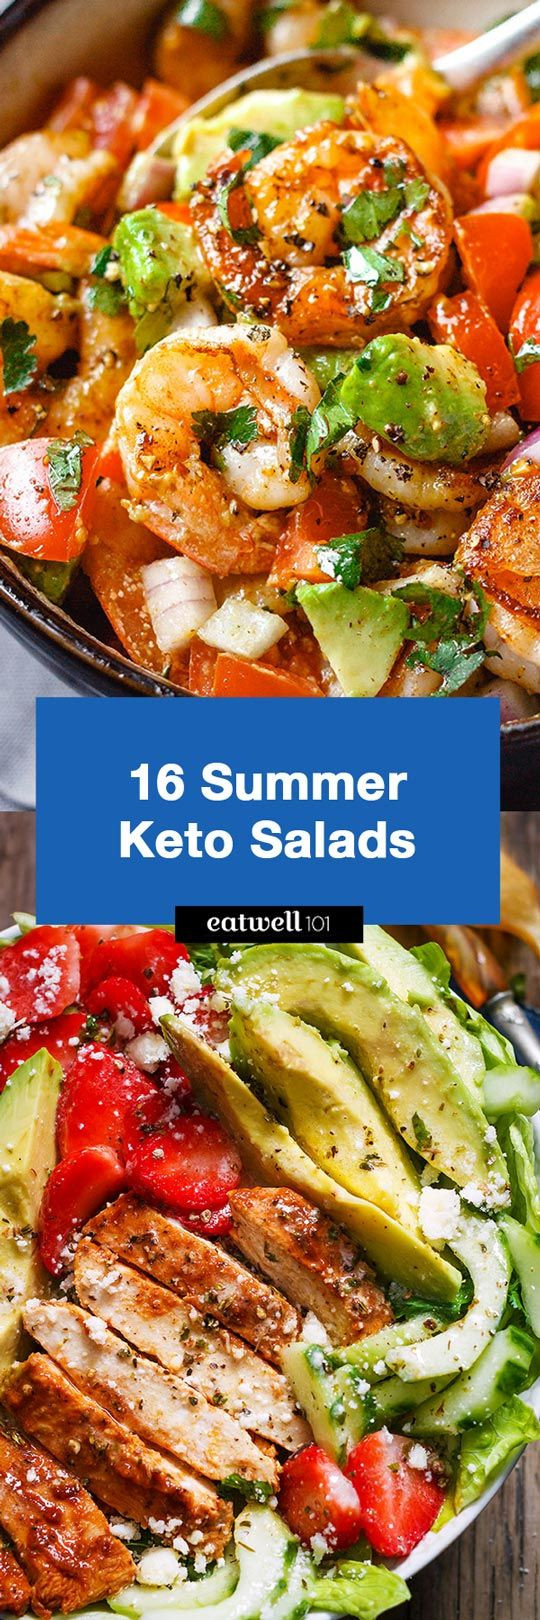 Summer Keto Dinner Ideas
 16 Best Summer Keto Salad Recipes